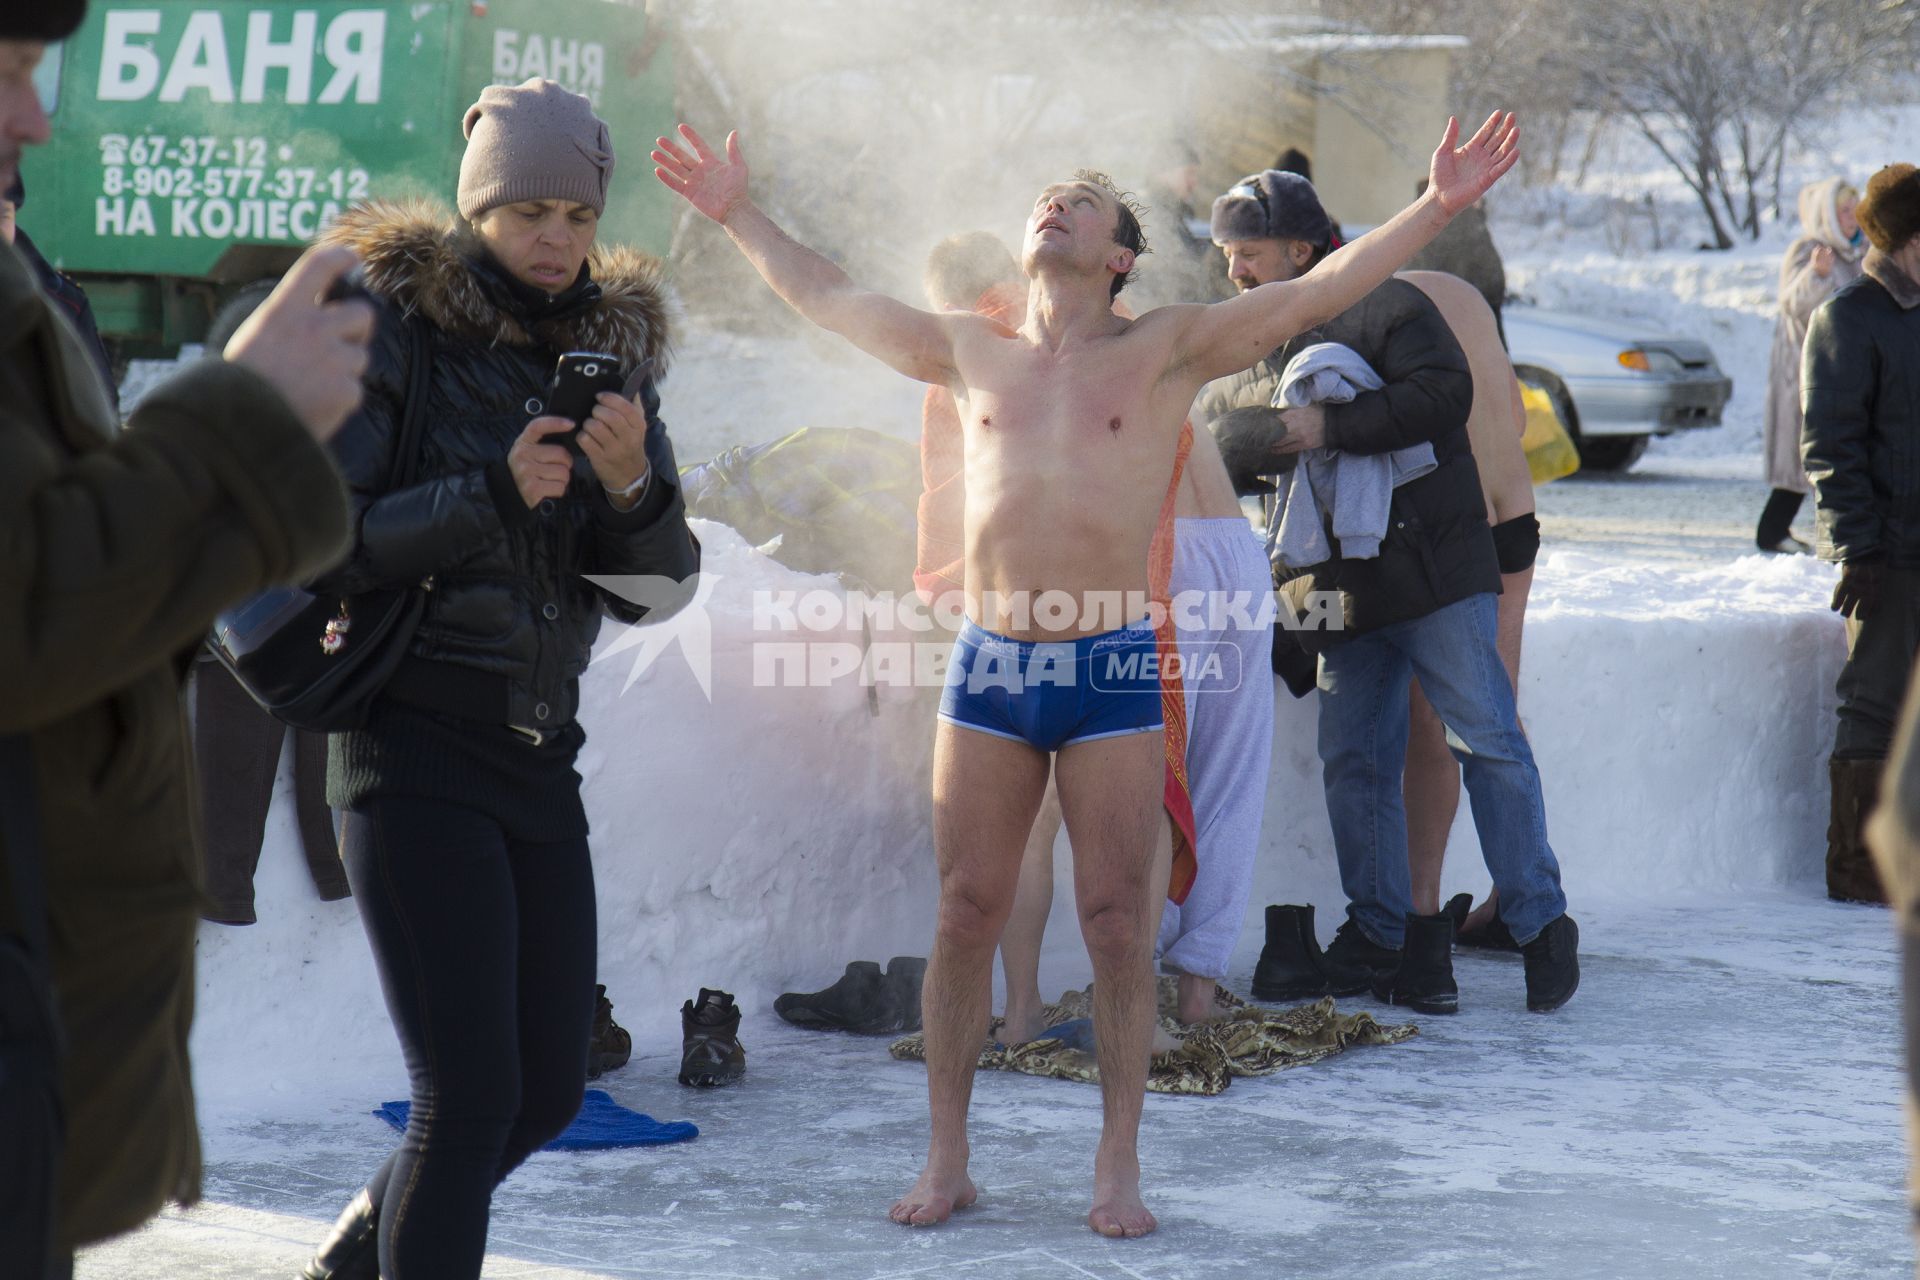 Крещенские купания в Иркутске. На снимке: мужчина после купания в проруби.